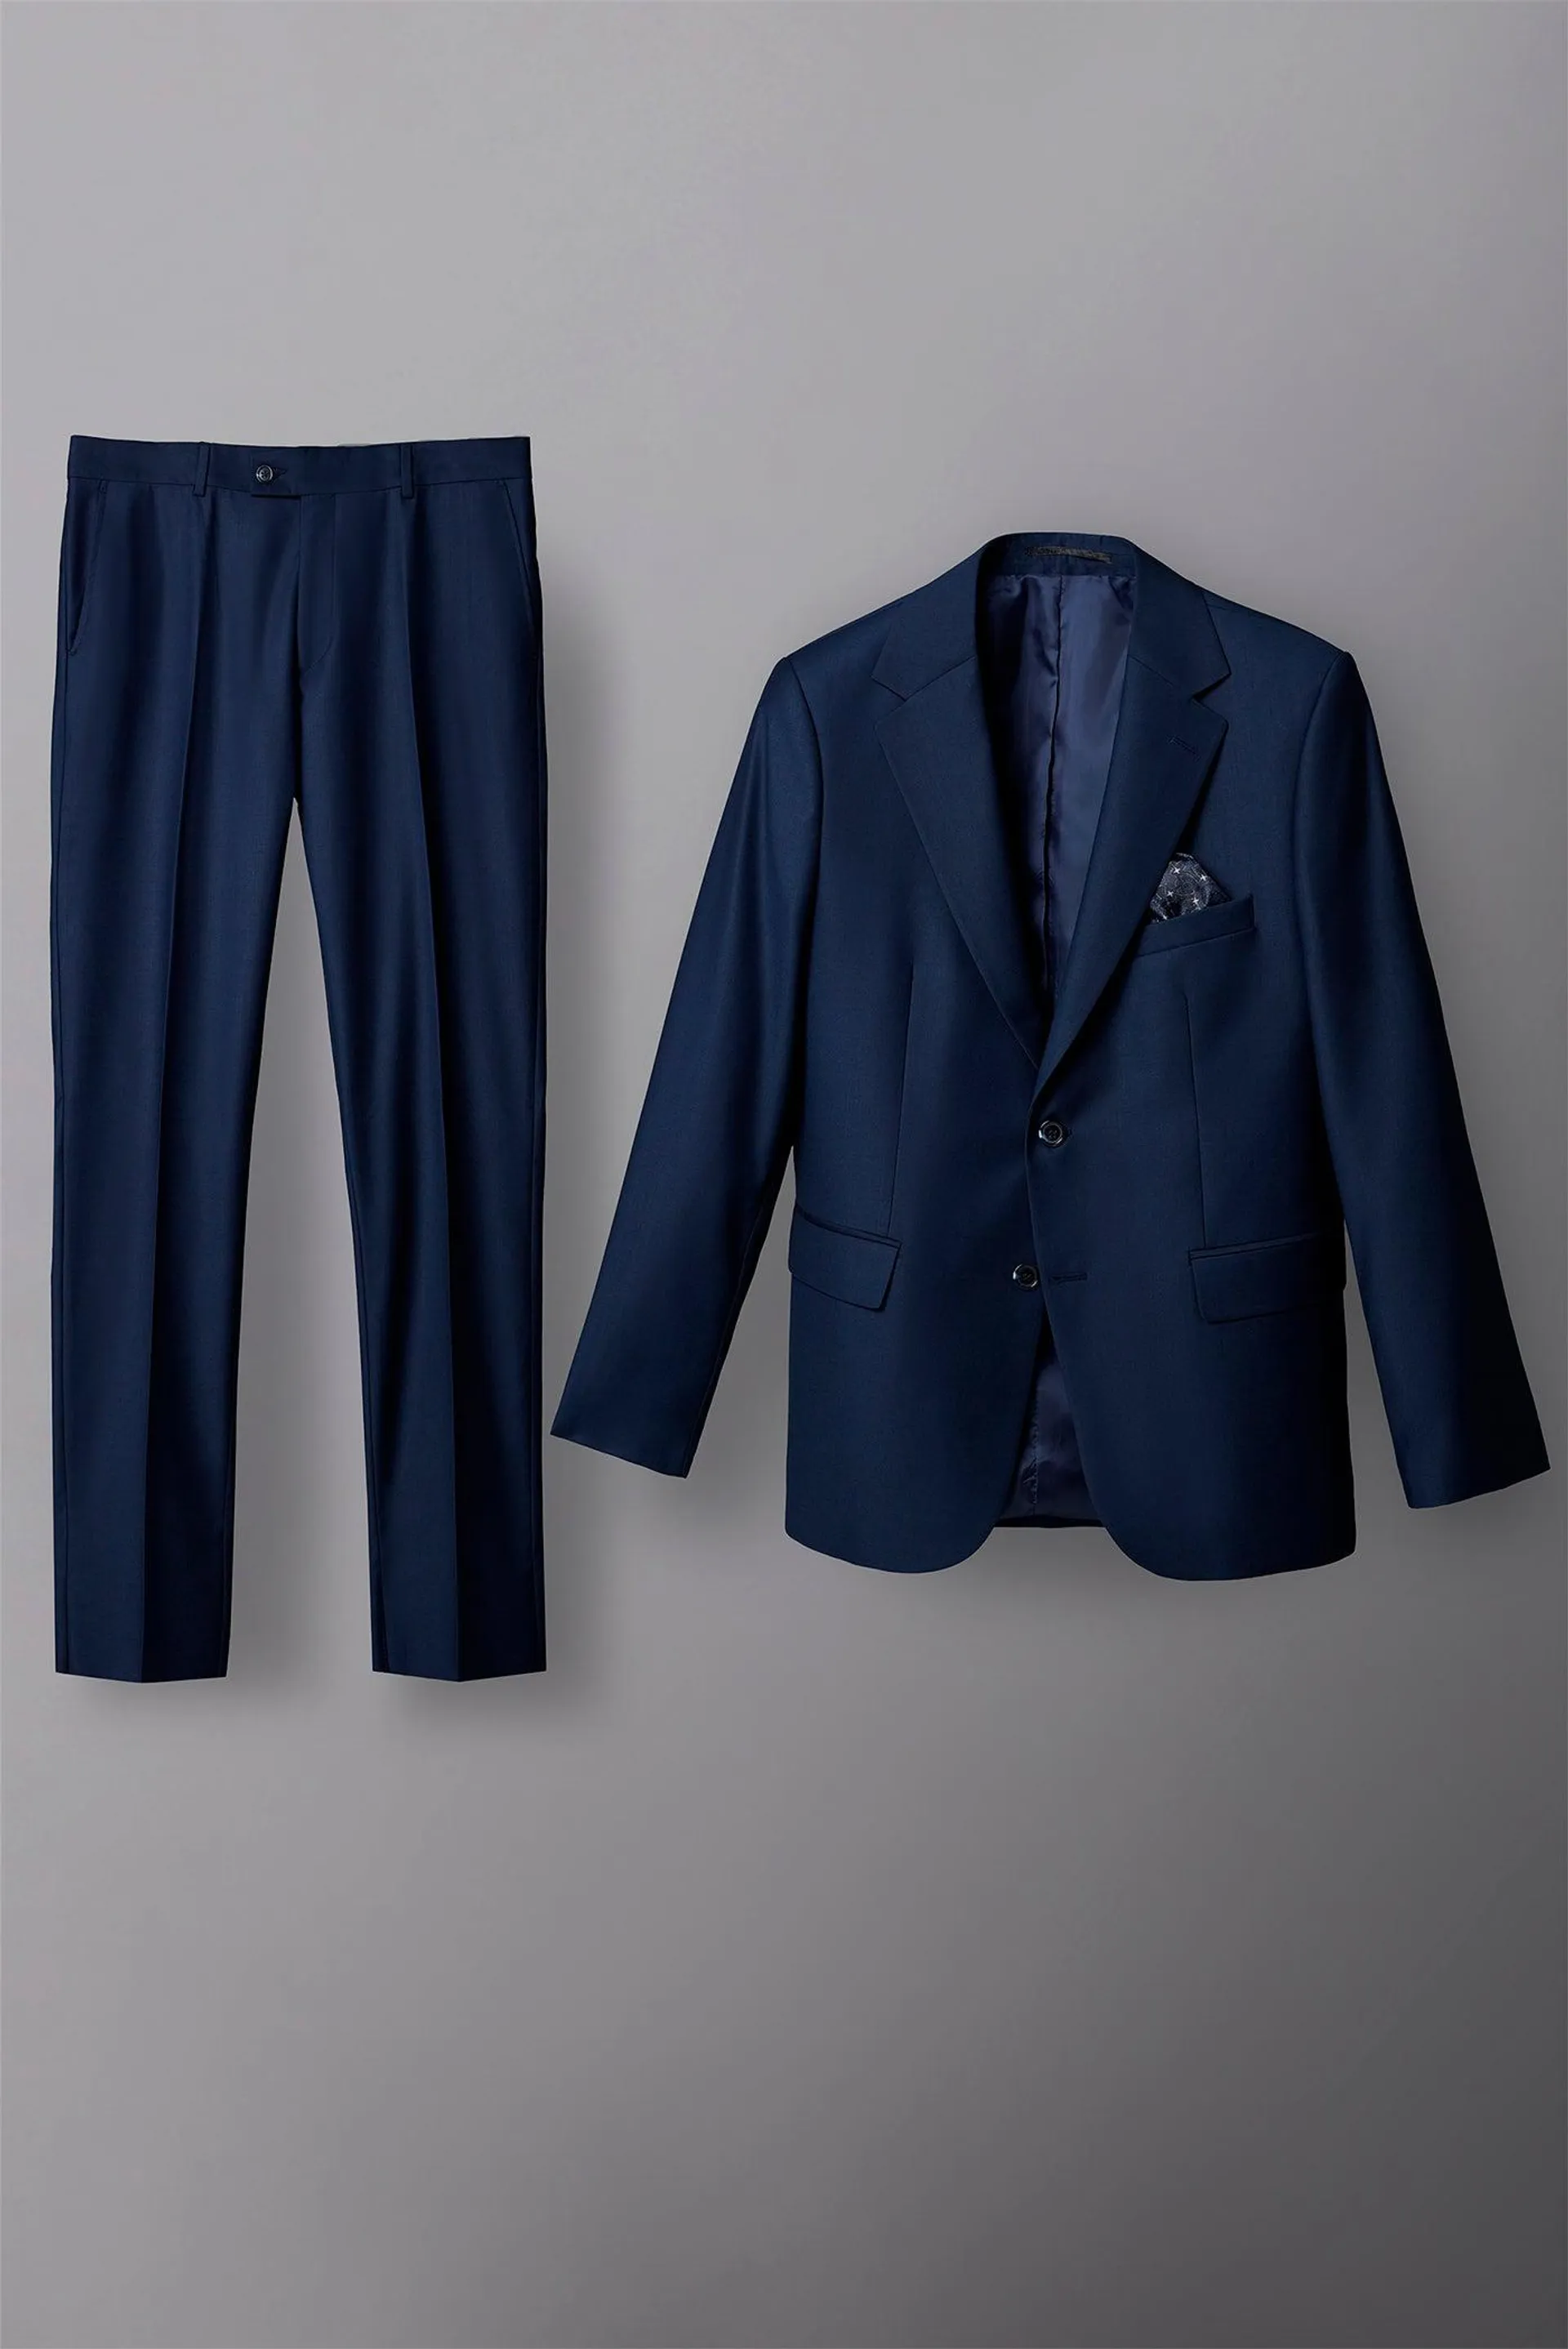 Polyviscose Man Suit Navy Blue Plain